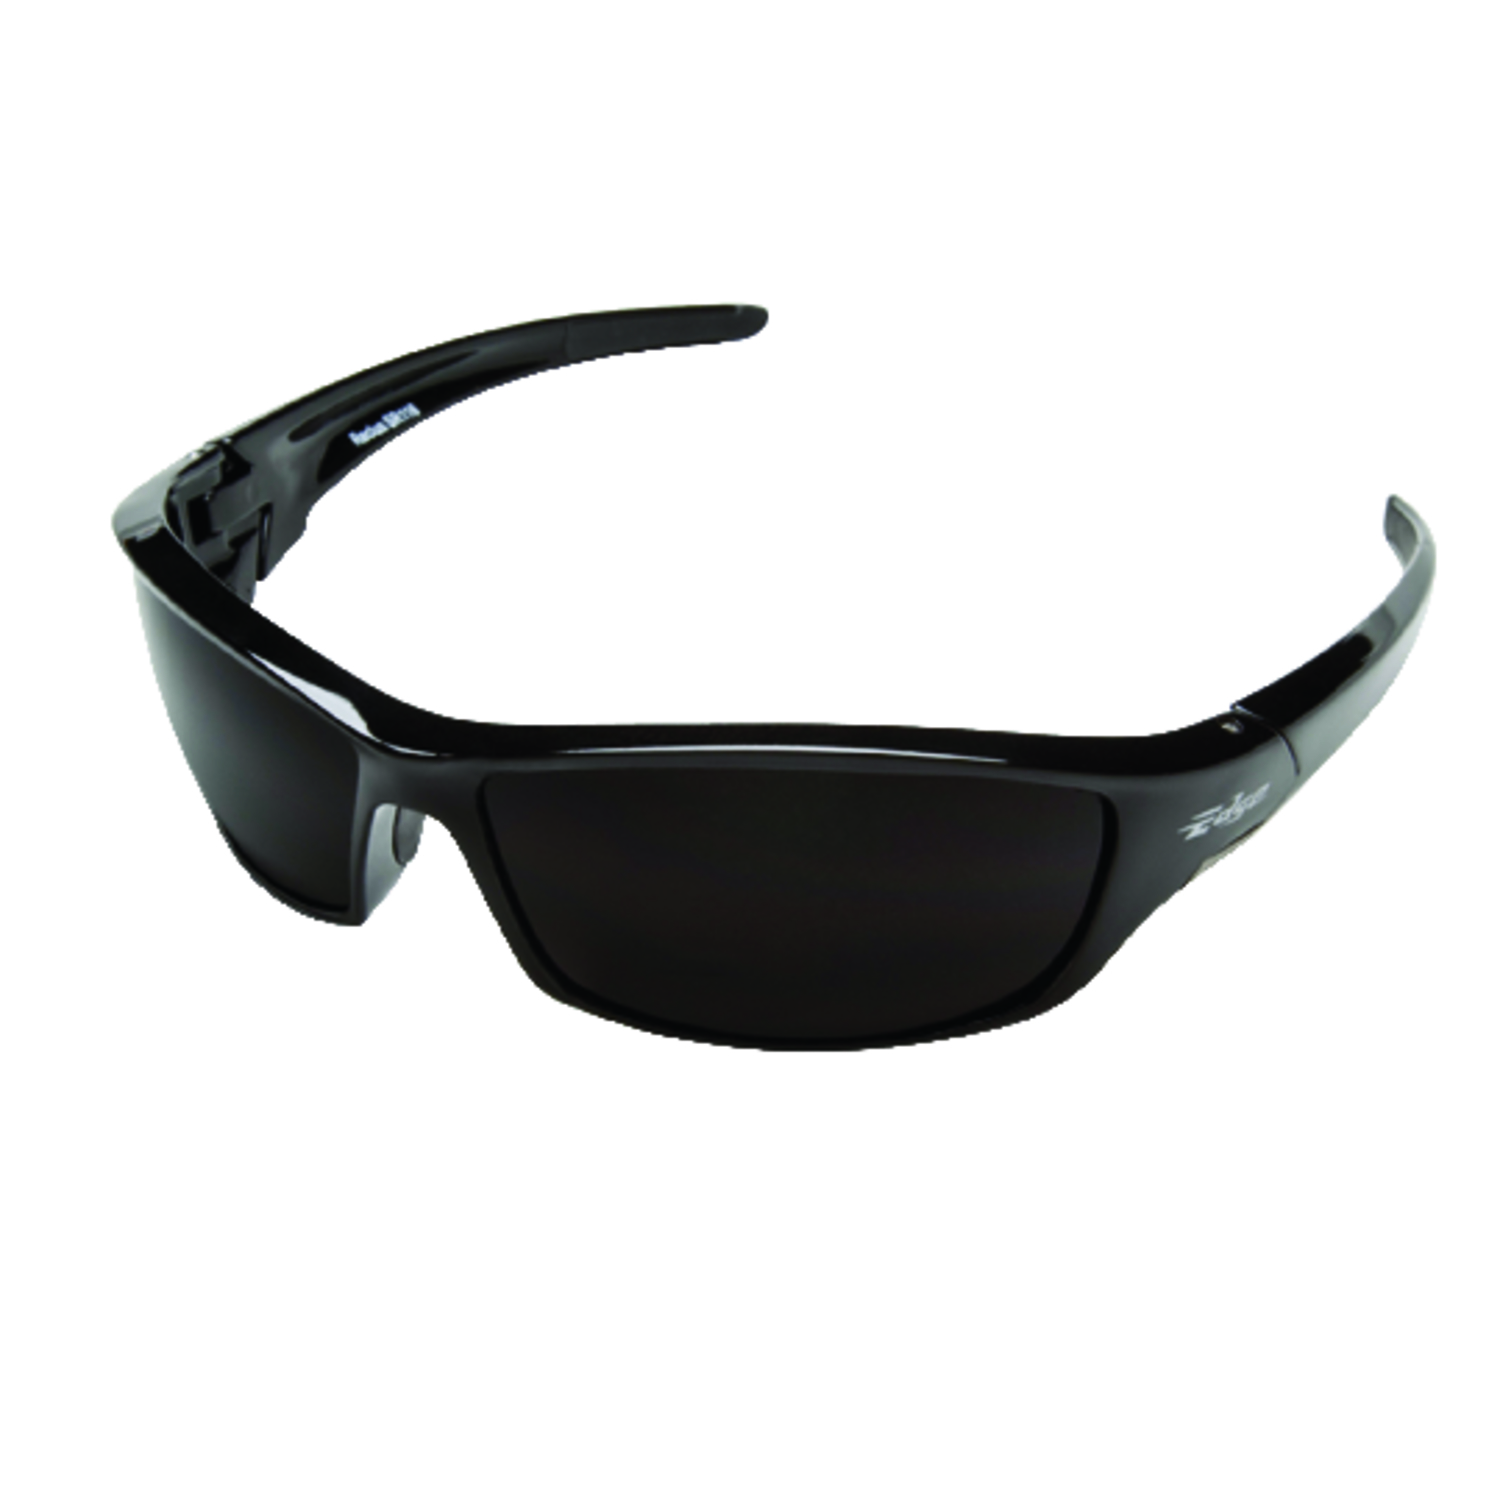 Edge Eyewear Reclus Anti-Fog Wraparound Safety Glasses Smoke Lens Black Frame 1 pc